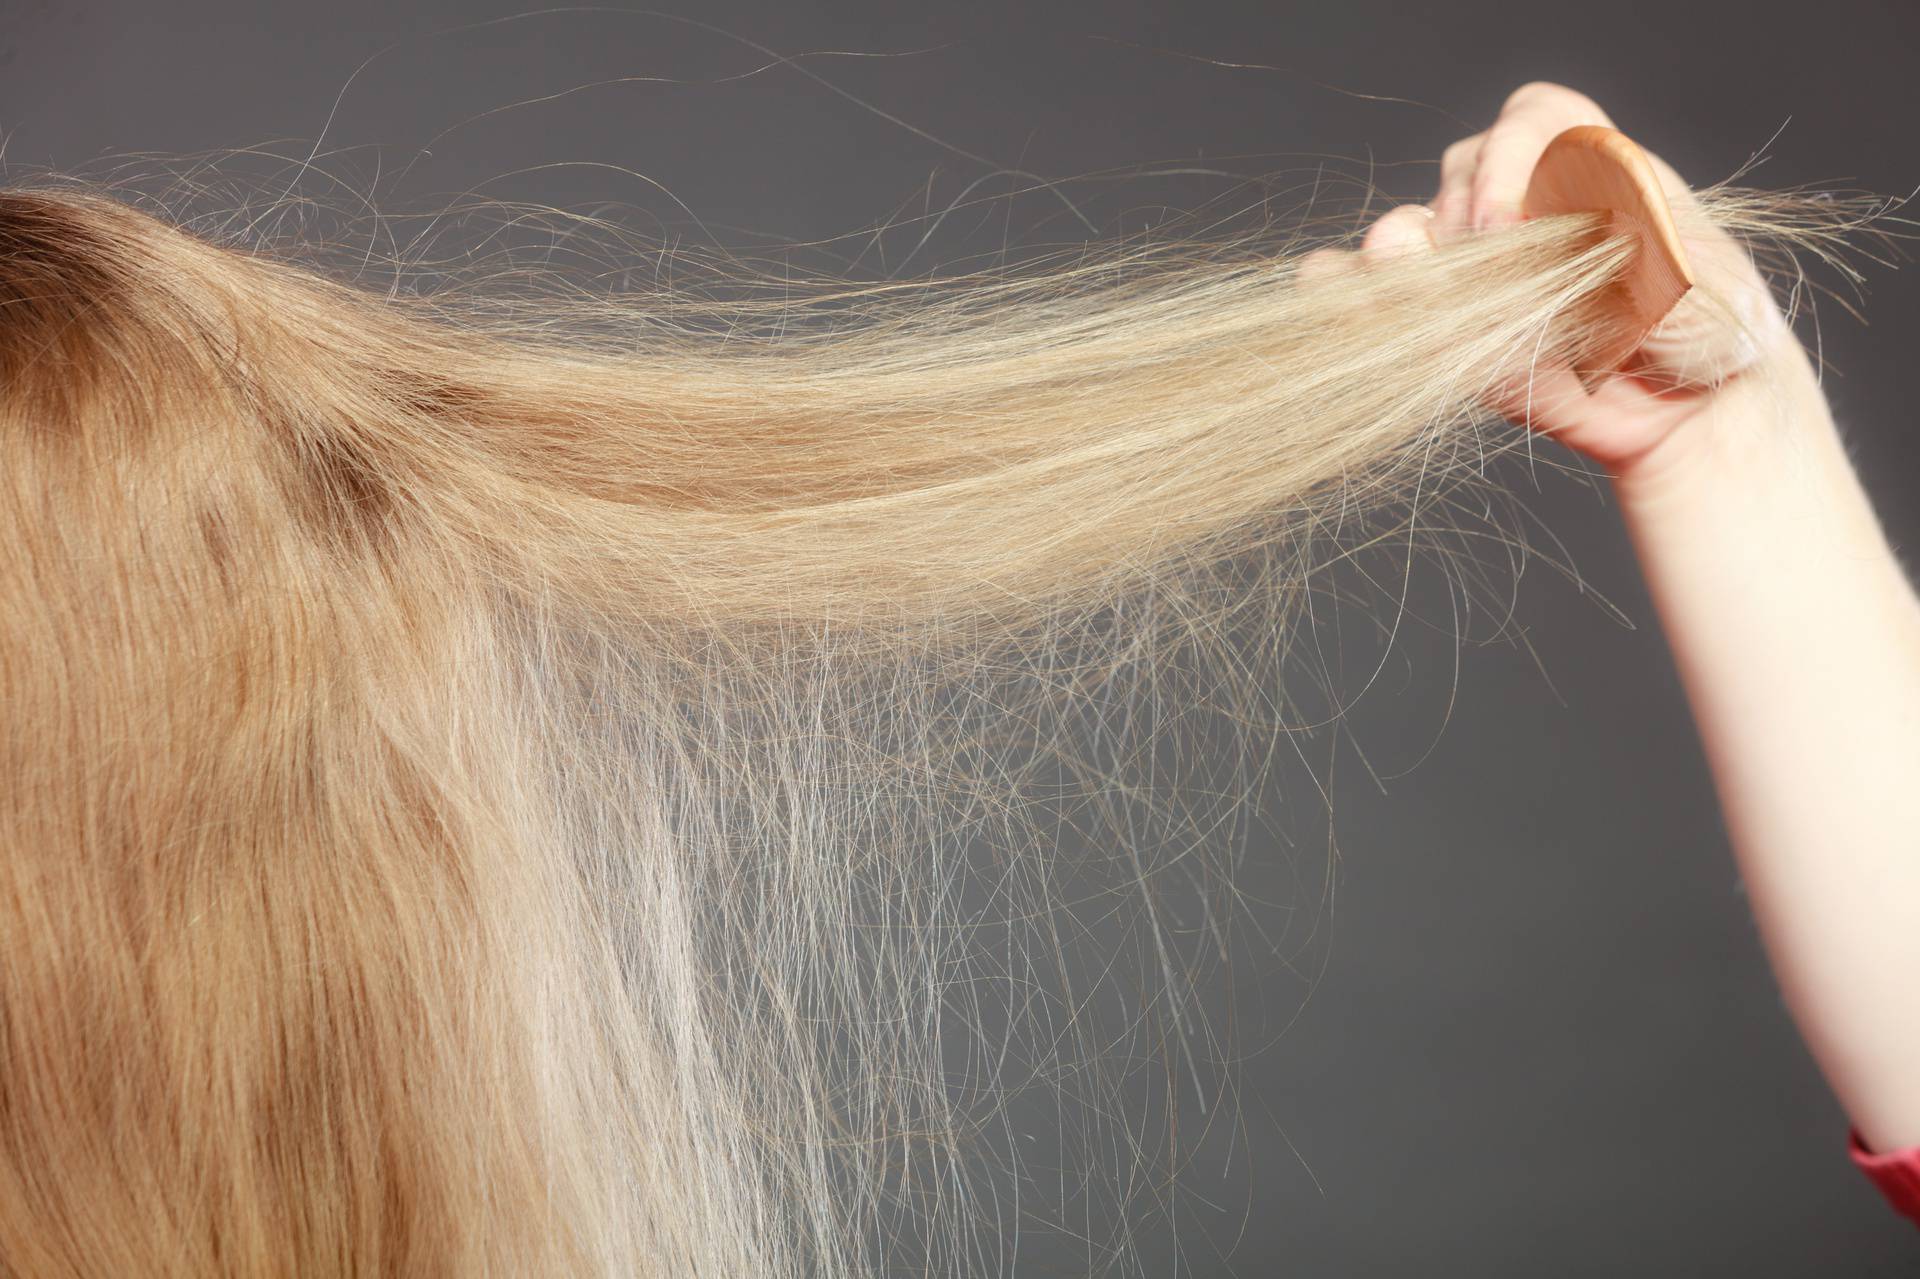 Zašto zimi naša kosa pojačano ispada? Zaustavite gubitak kose na vrijeme uz samo malo pažnje